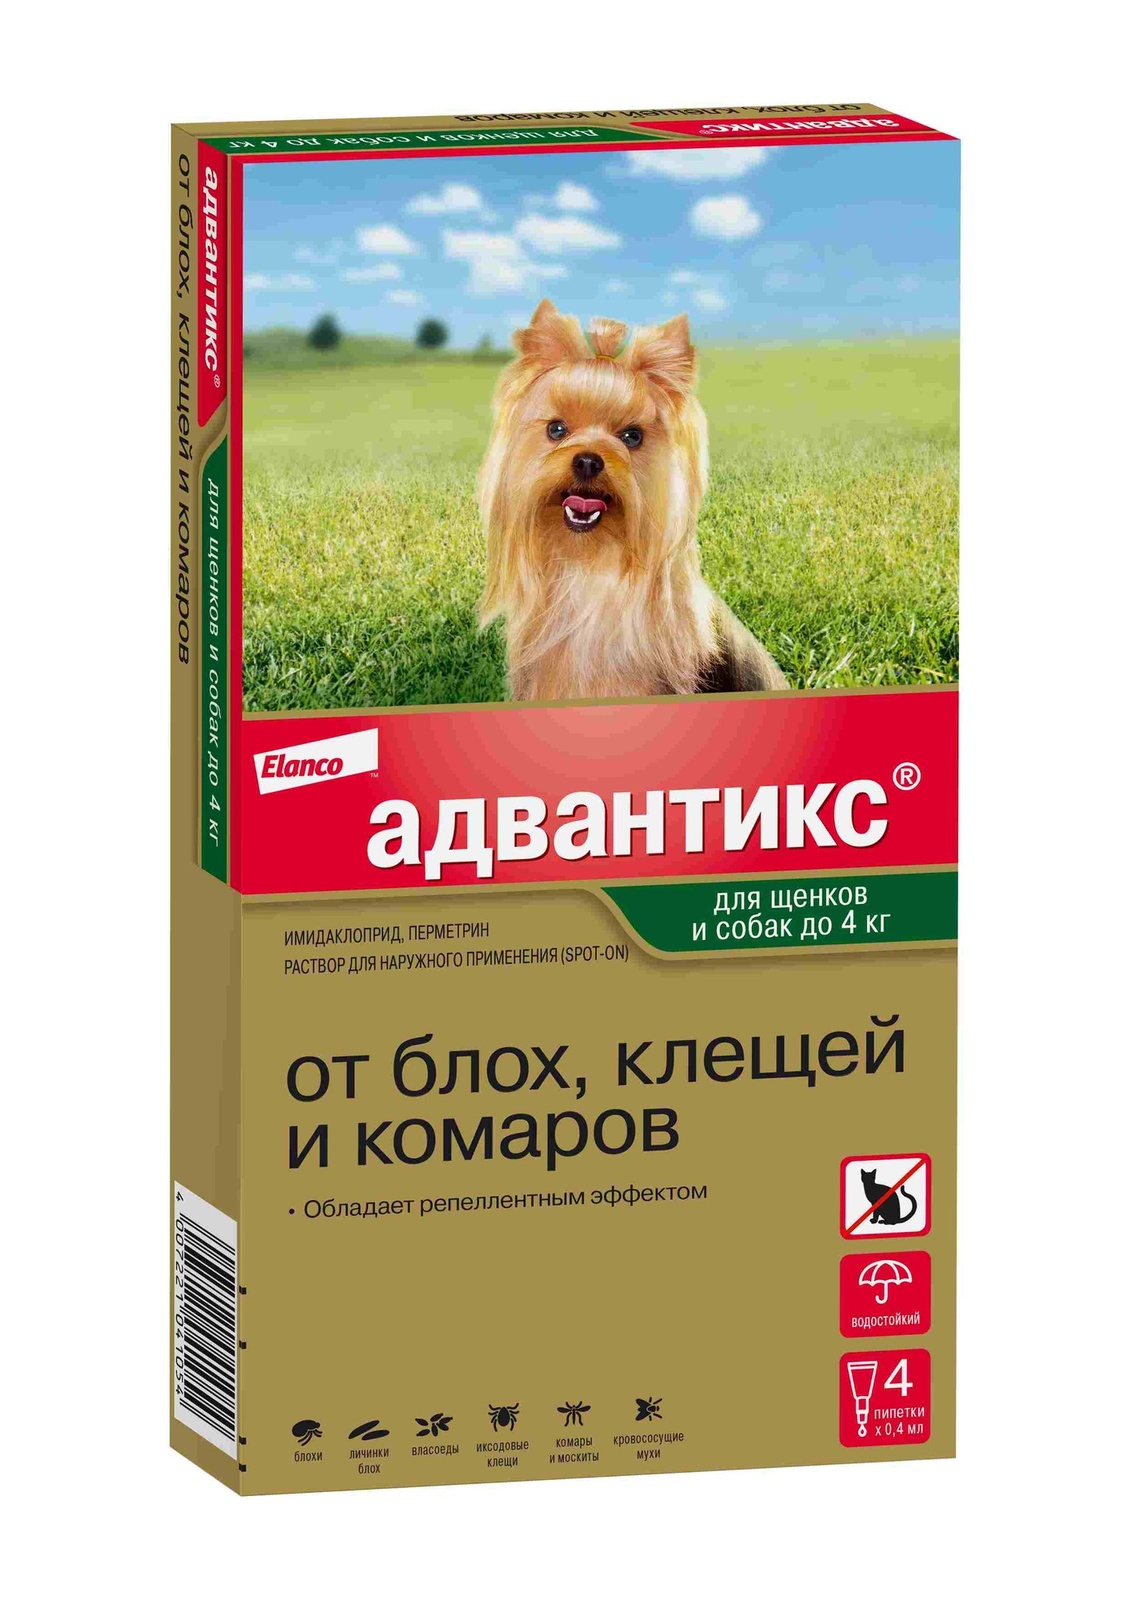 Elanco адвантикс®  для собак весом до 4 кг для защиты от блох, иксодовых клещей и летающих насекомых и переносимых ими заболеваний. 4 пипетки в упаковке (10 г)